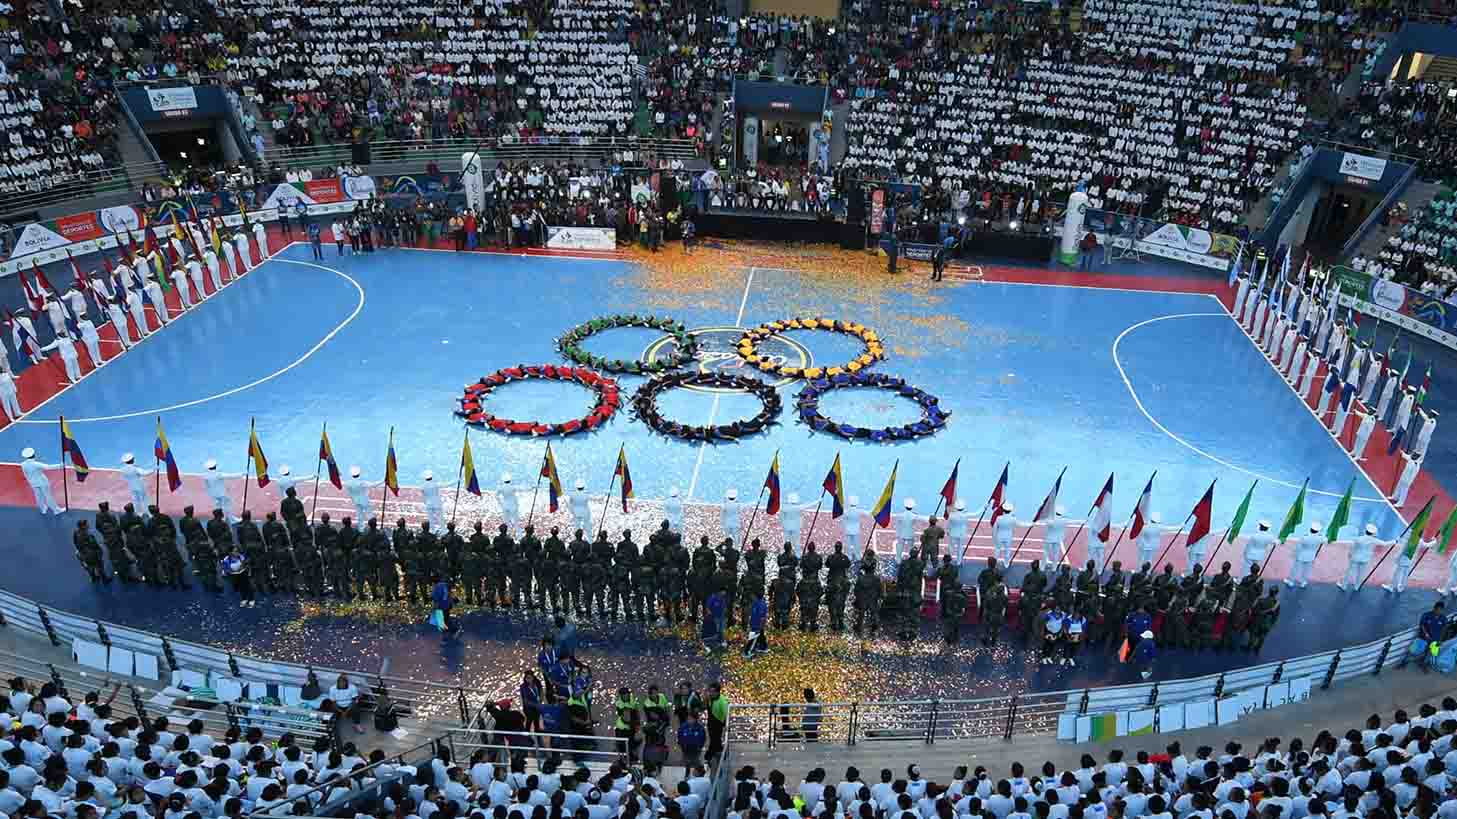 El Sumario - Los Juegos Suramericanos Cochabamba 2018 se realizarán desde este 26 de mayo al 8 de junio y contará con la participación de más de 300 atletas venezolanos